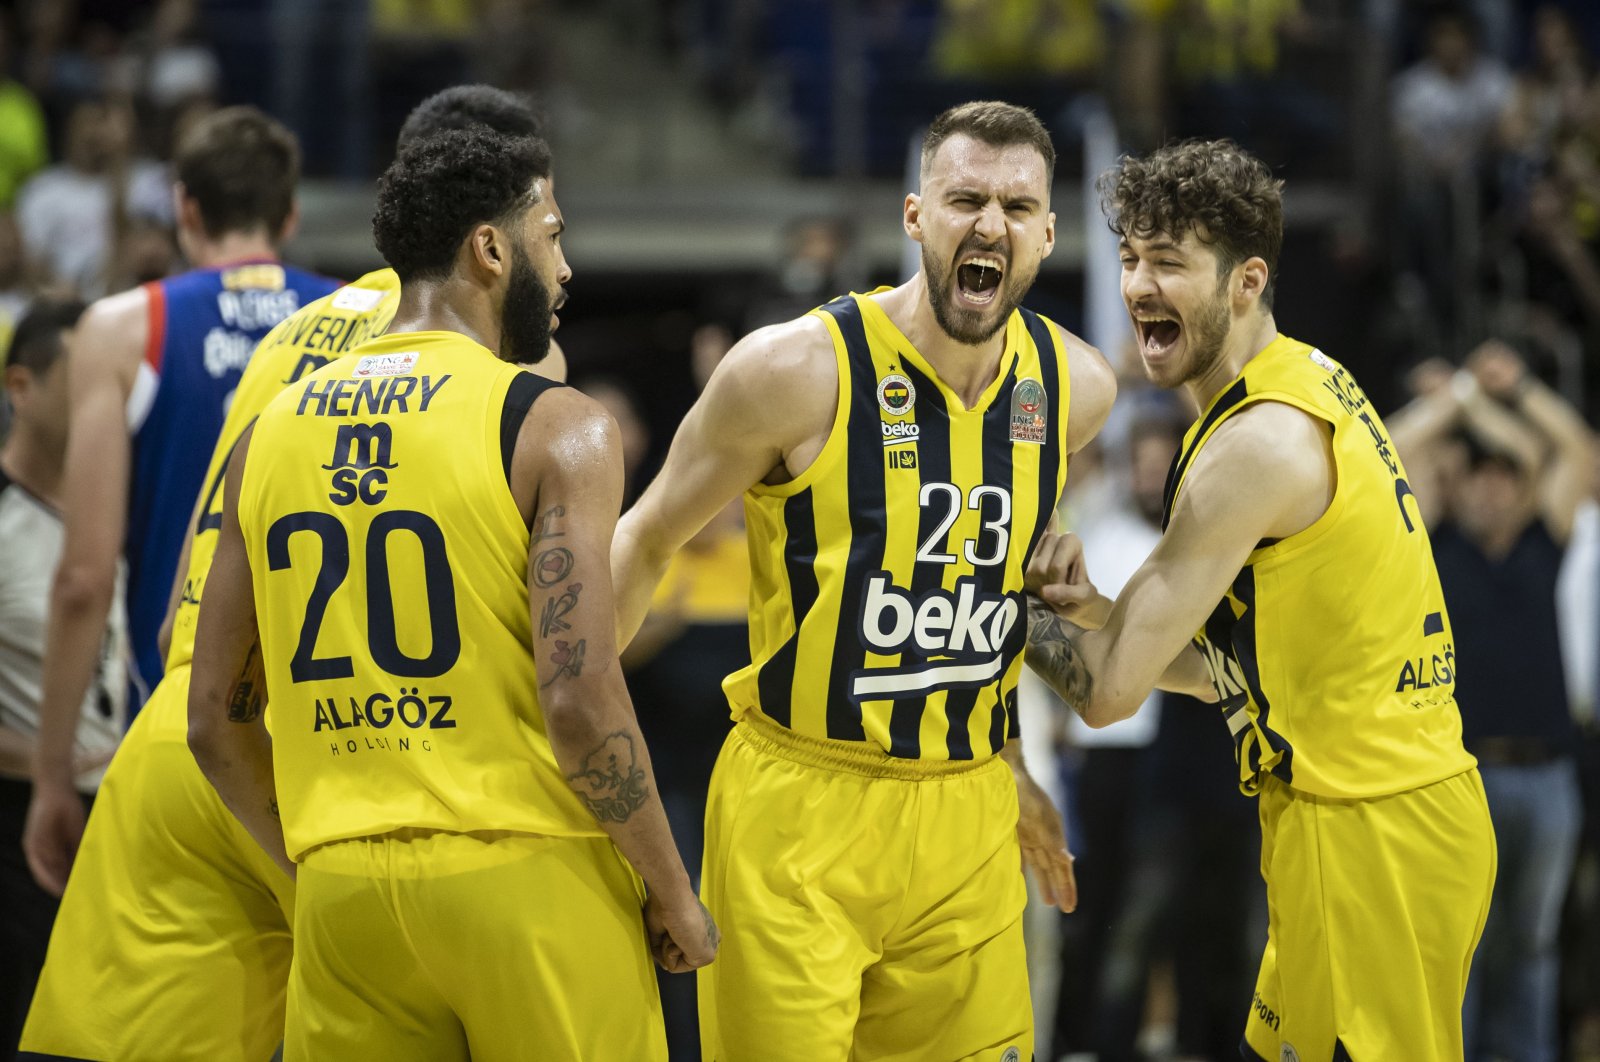 Fenerbahçe bergerak dalam kemenangan untuk mengklaim gelar bola basket Turki